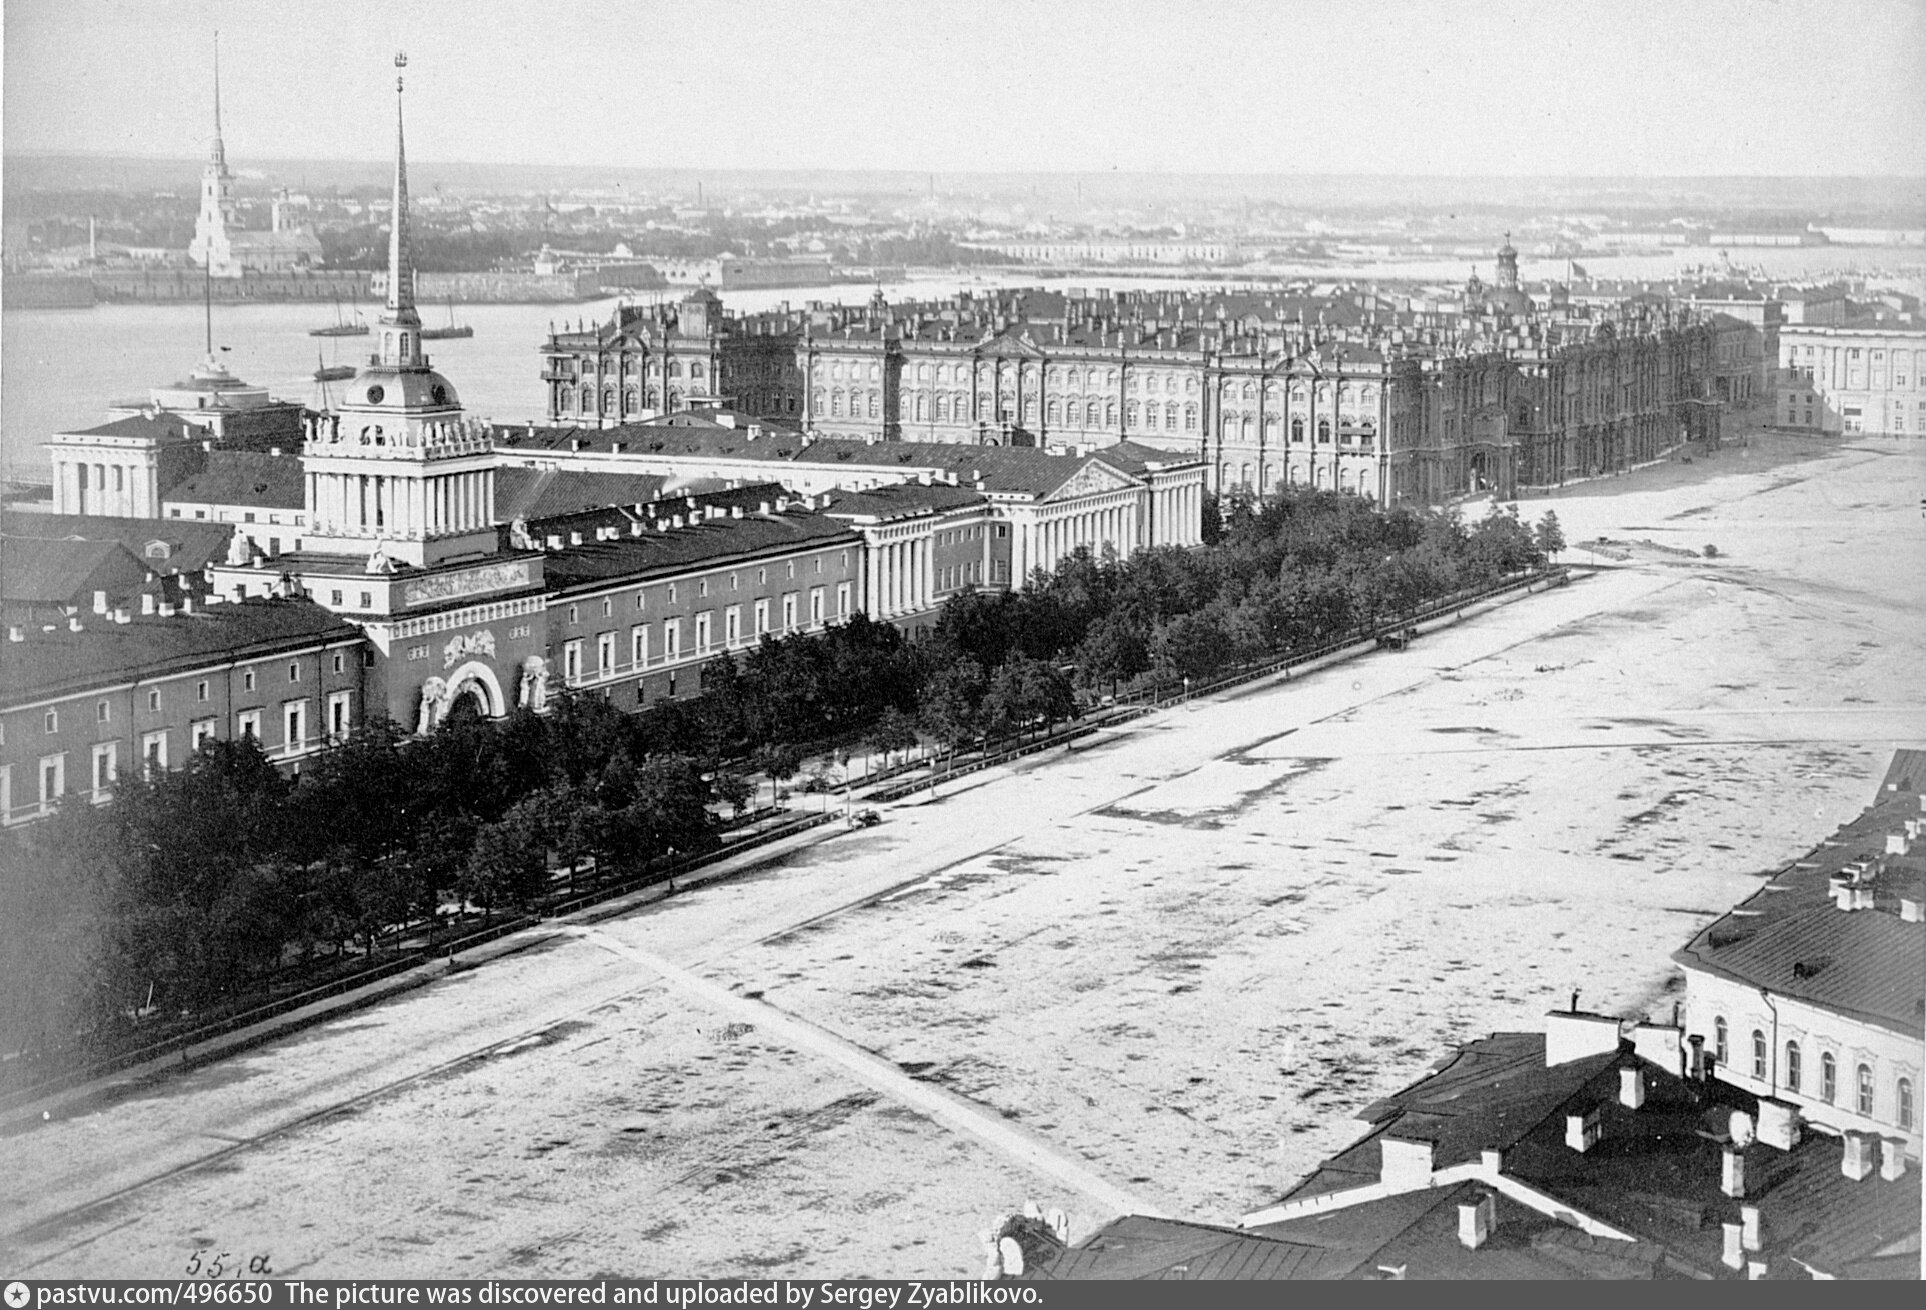 фотографии городов 19 века без людей почему